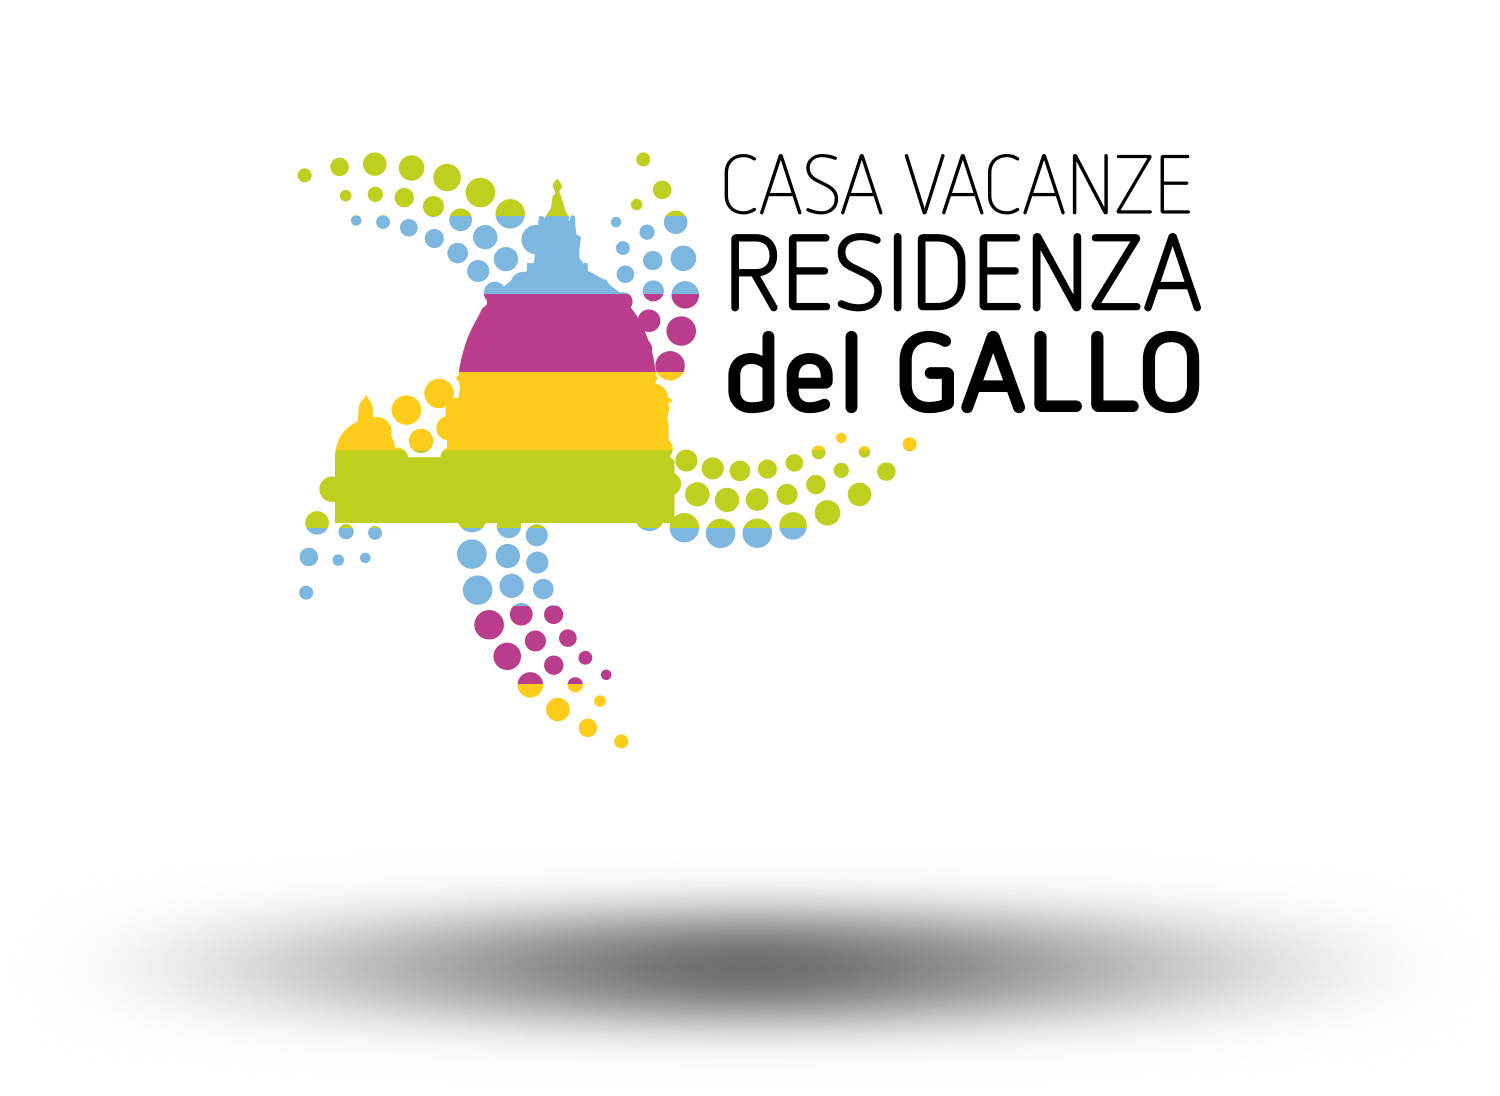 Residenza-del-Gallo-casa-vacanze-roma-realizzazione-logo